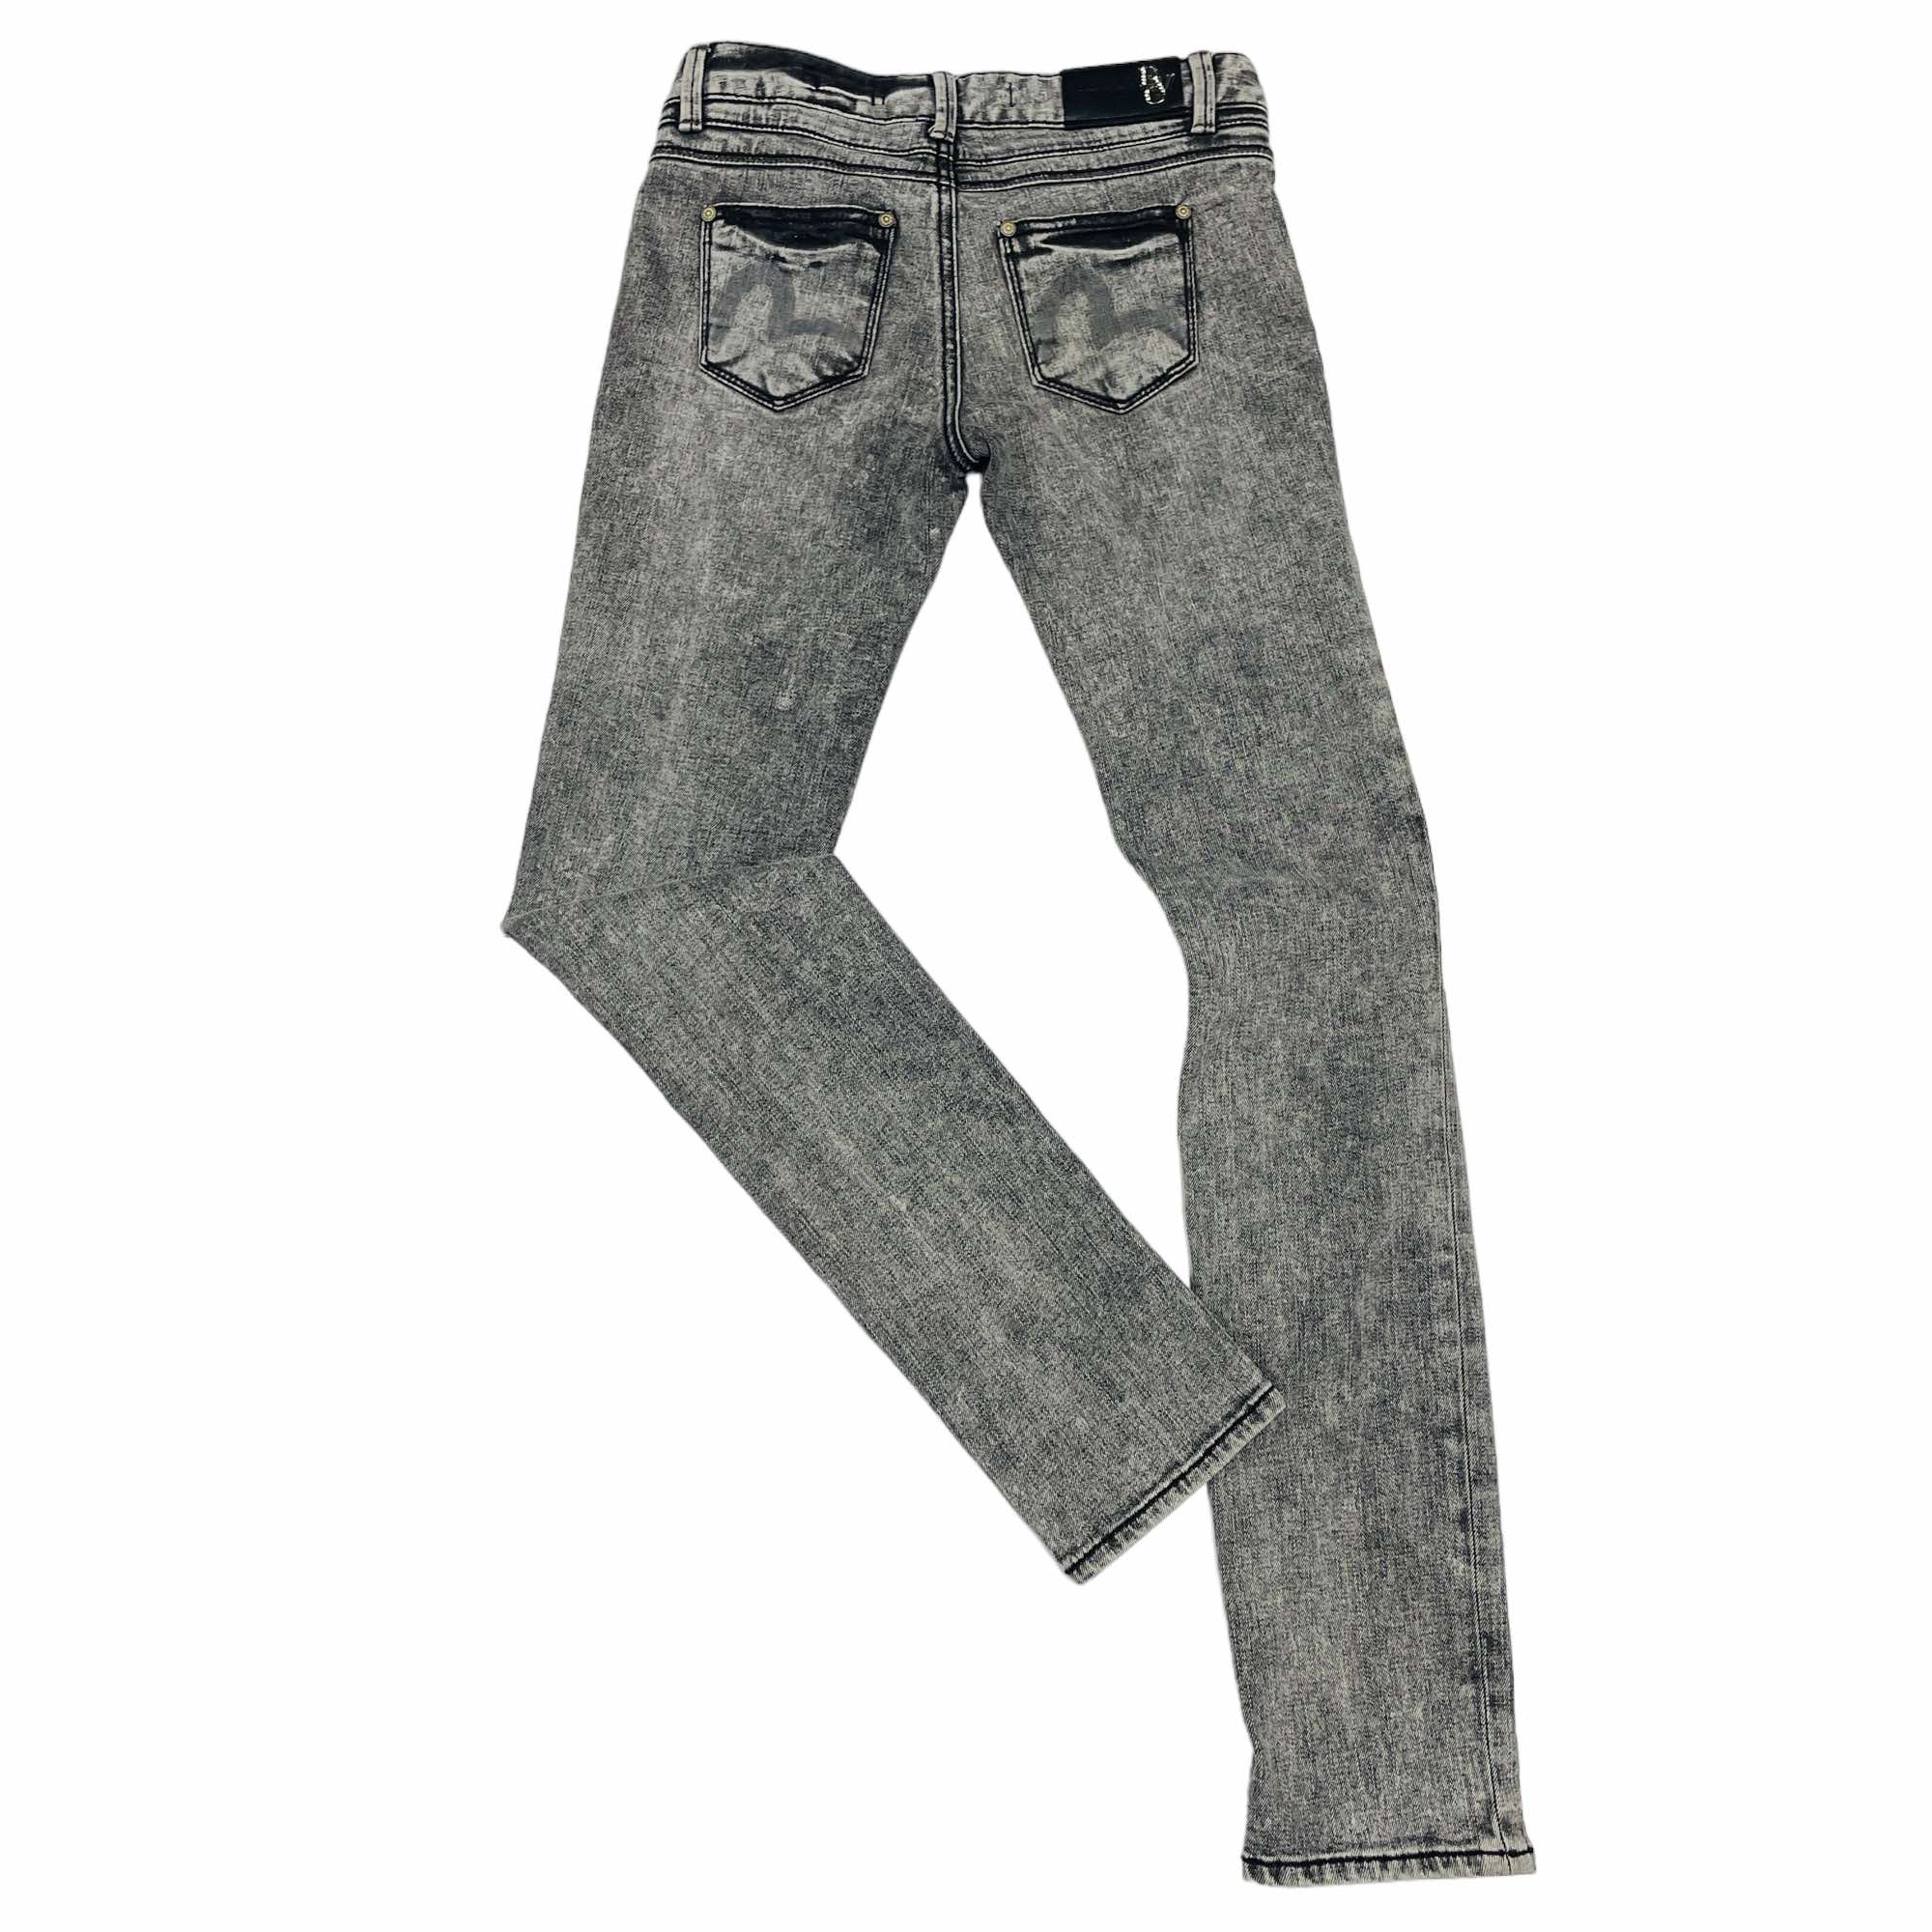 Evisu Denim Jeans - W28 L30